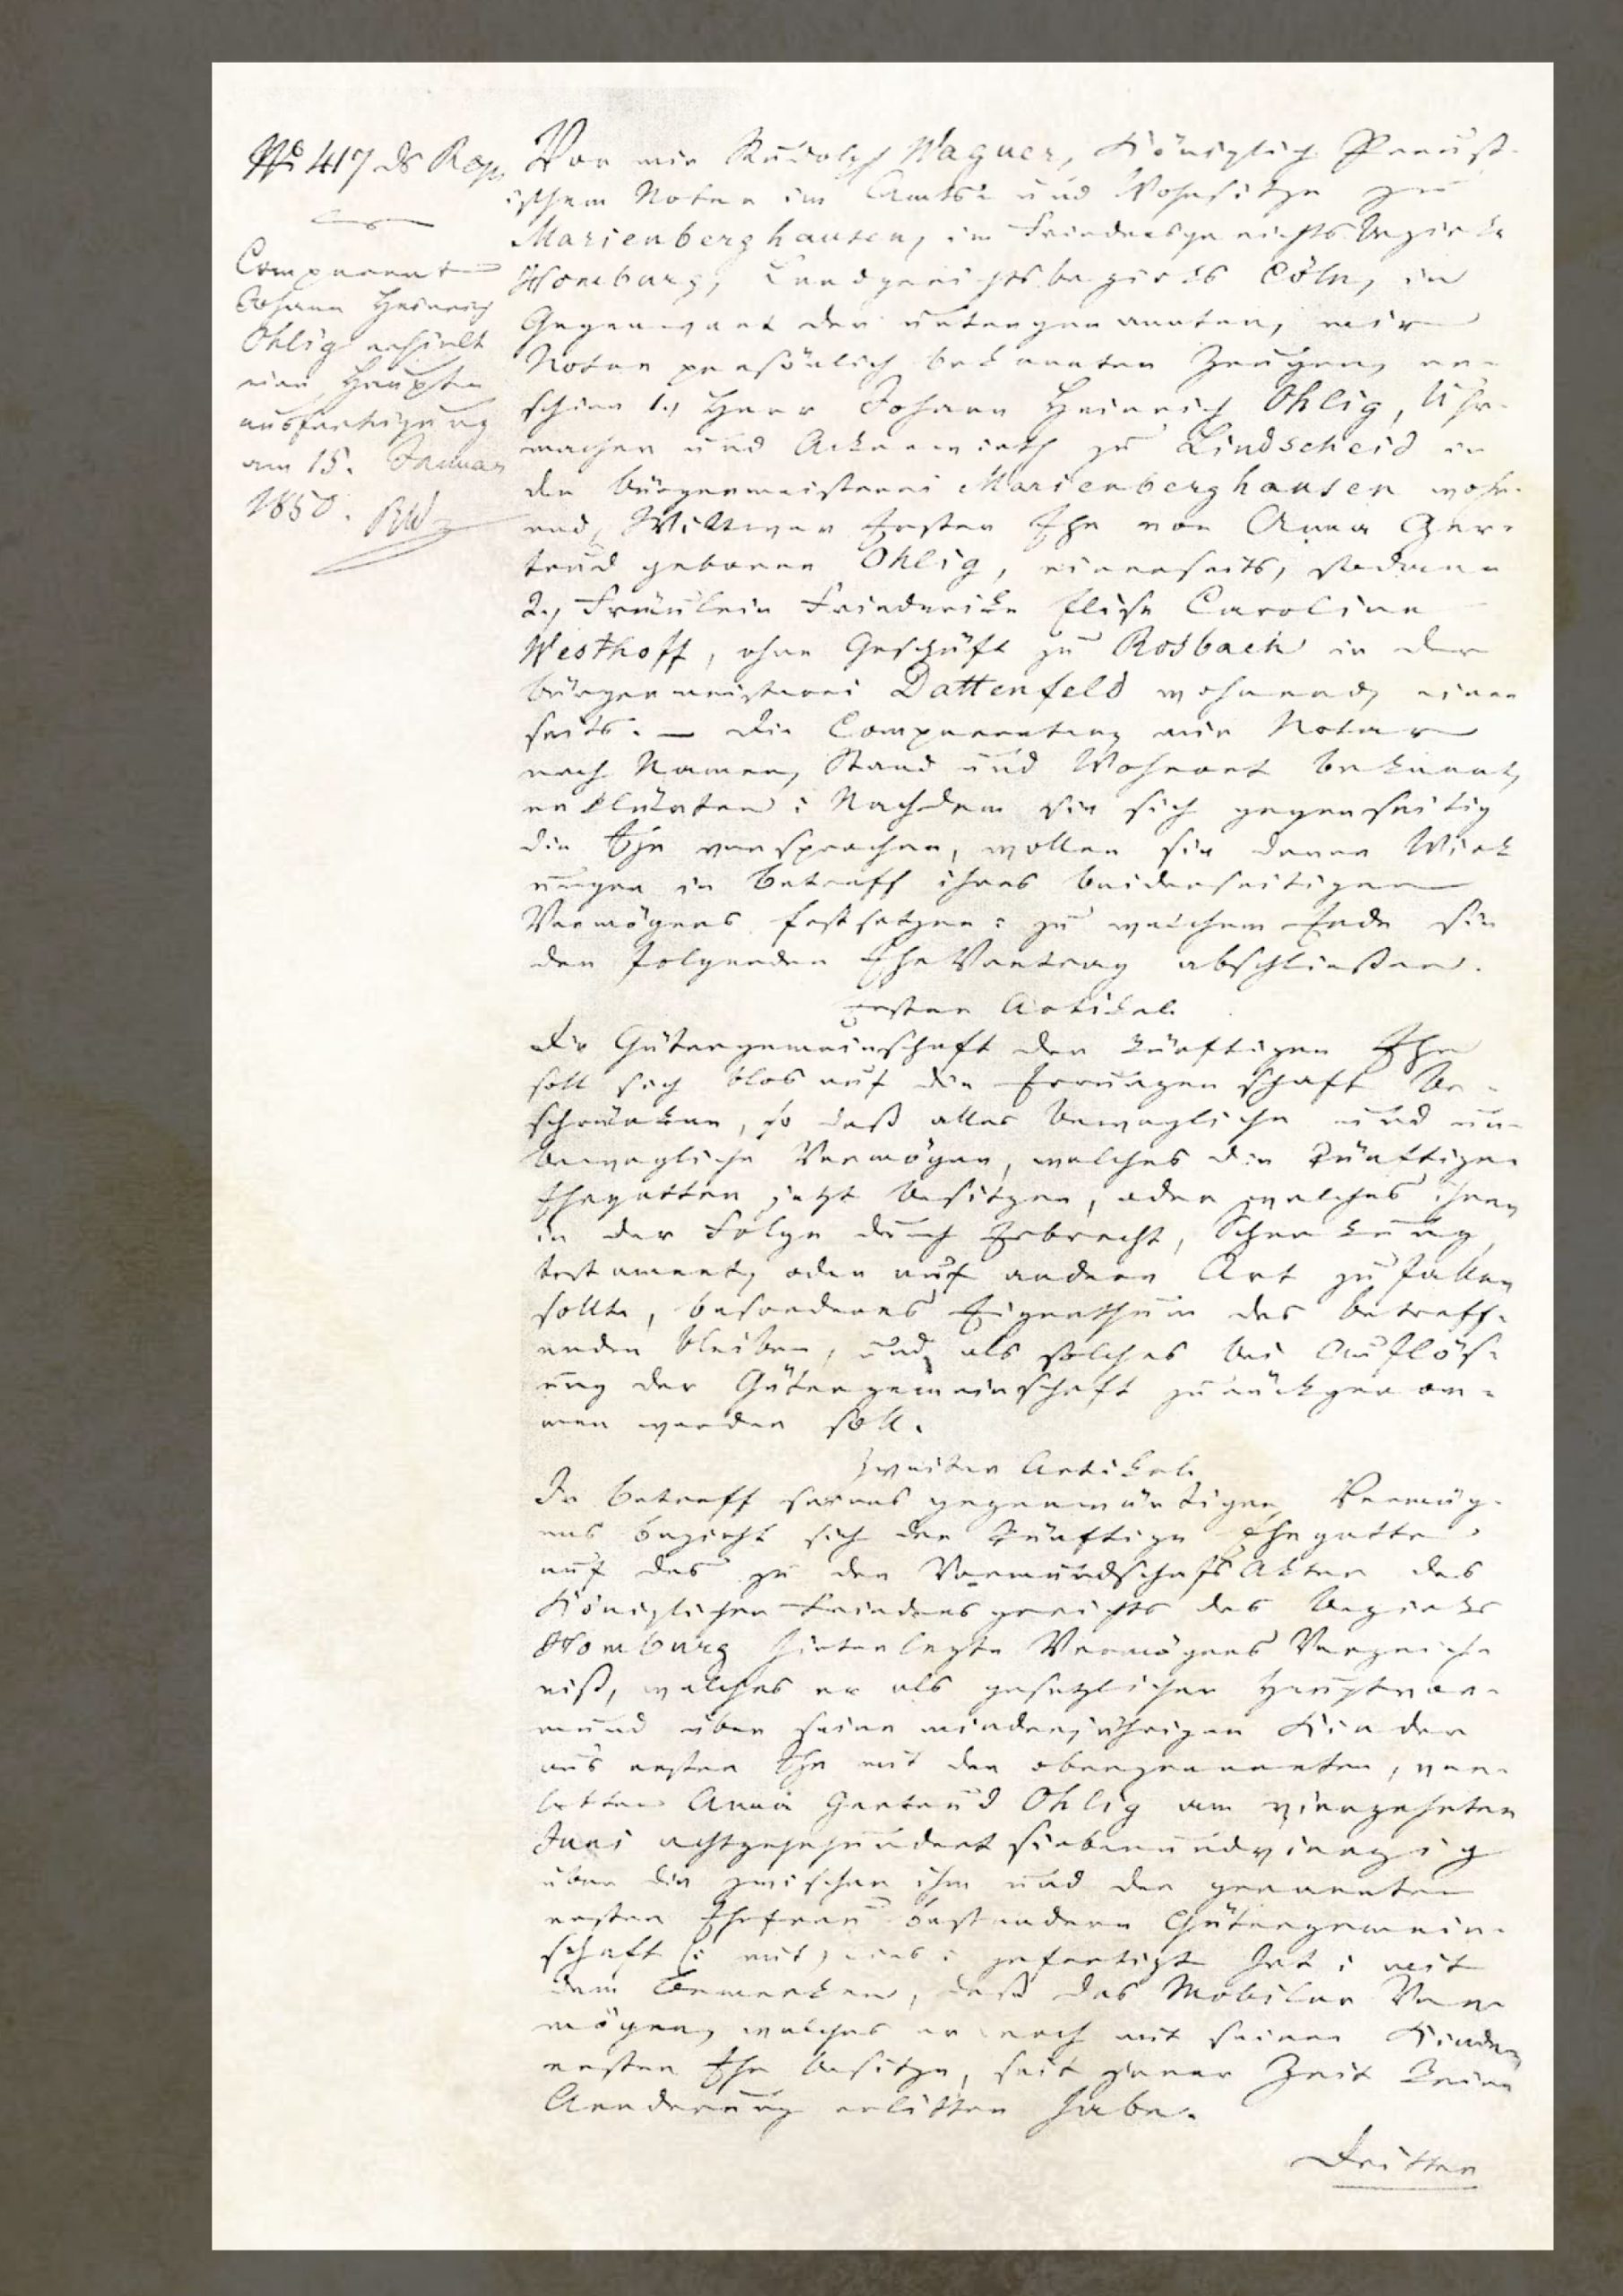 Ehevertrag zwischen J.H. Ohlig und Caroline Westhoff vom 10. Juli 1849, LVR-Freilichtmuseum Lindlar (Ausschnitt)